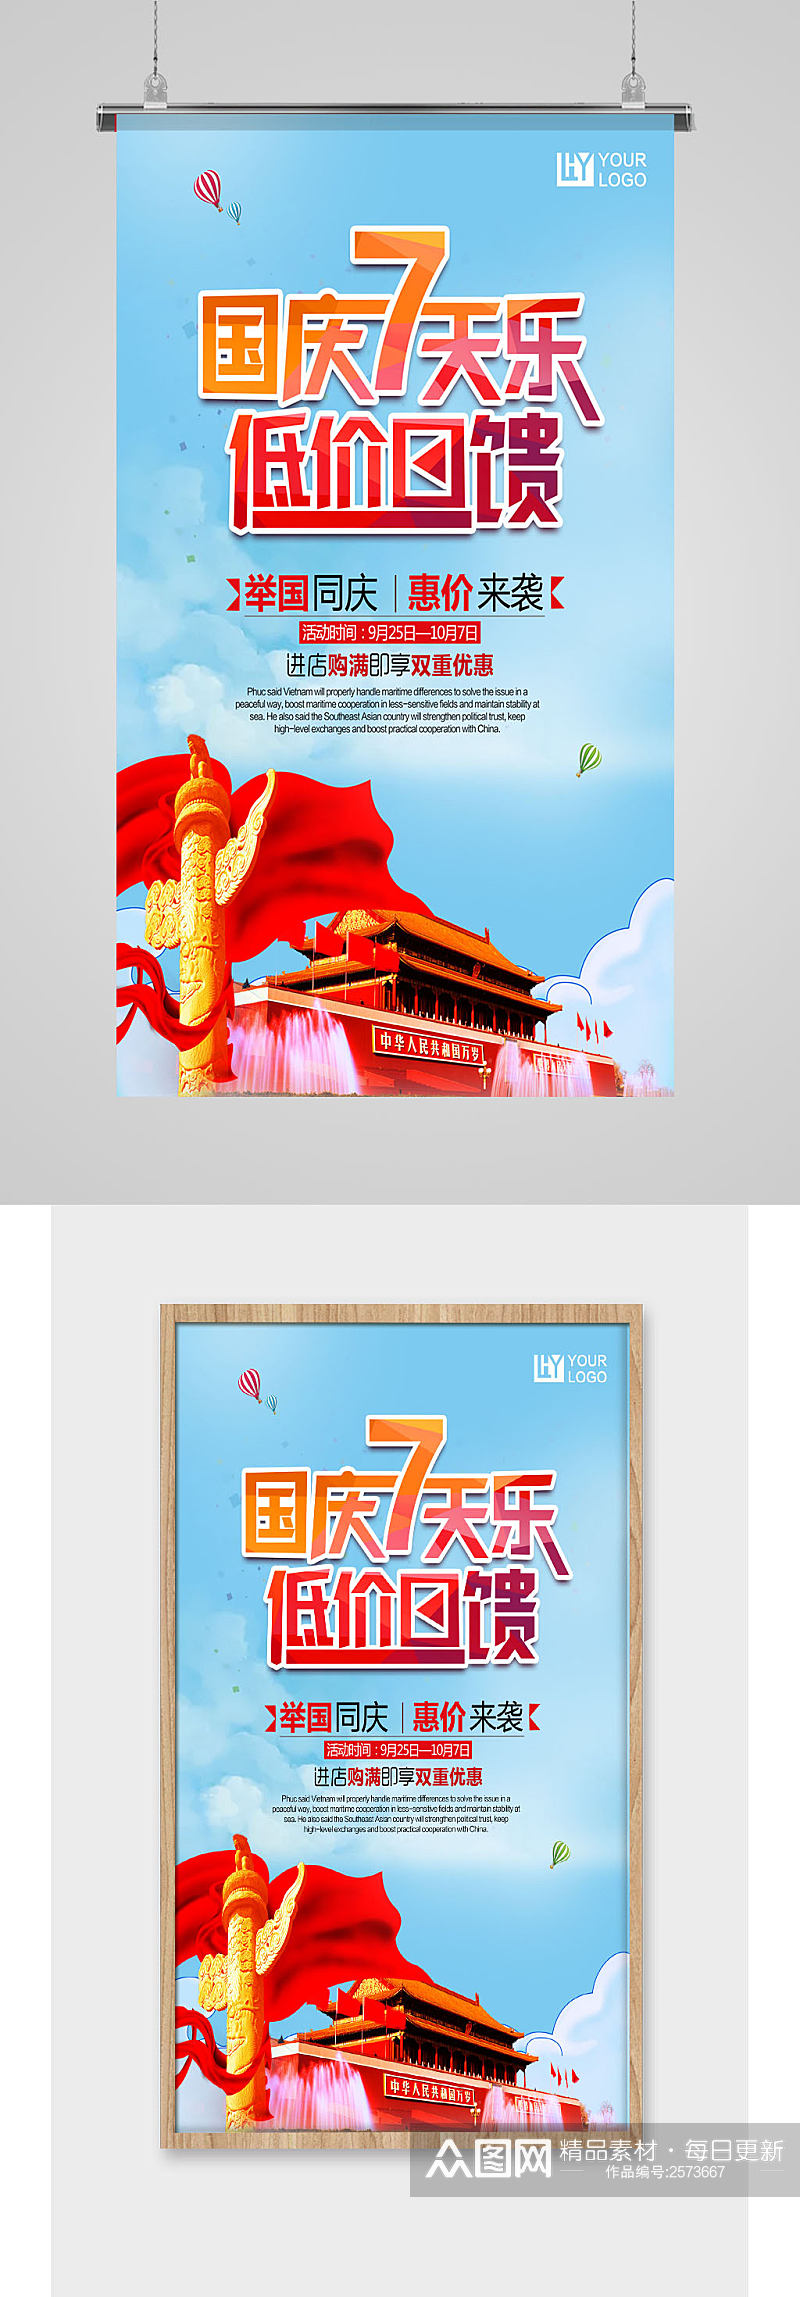 国庆7天乐促销海报模板素材